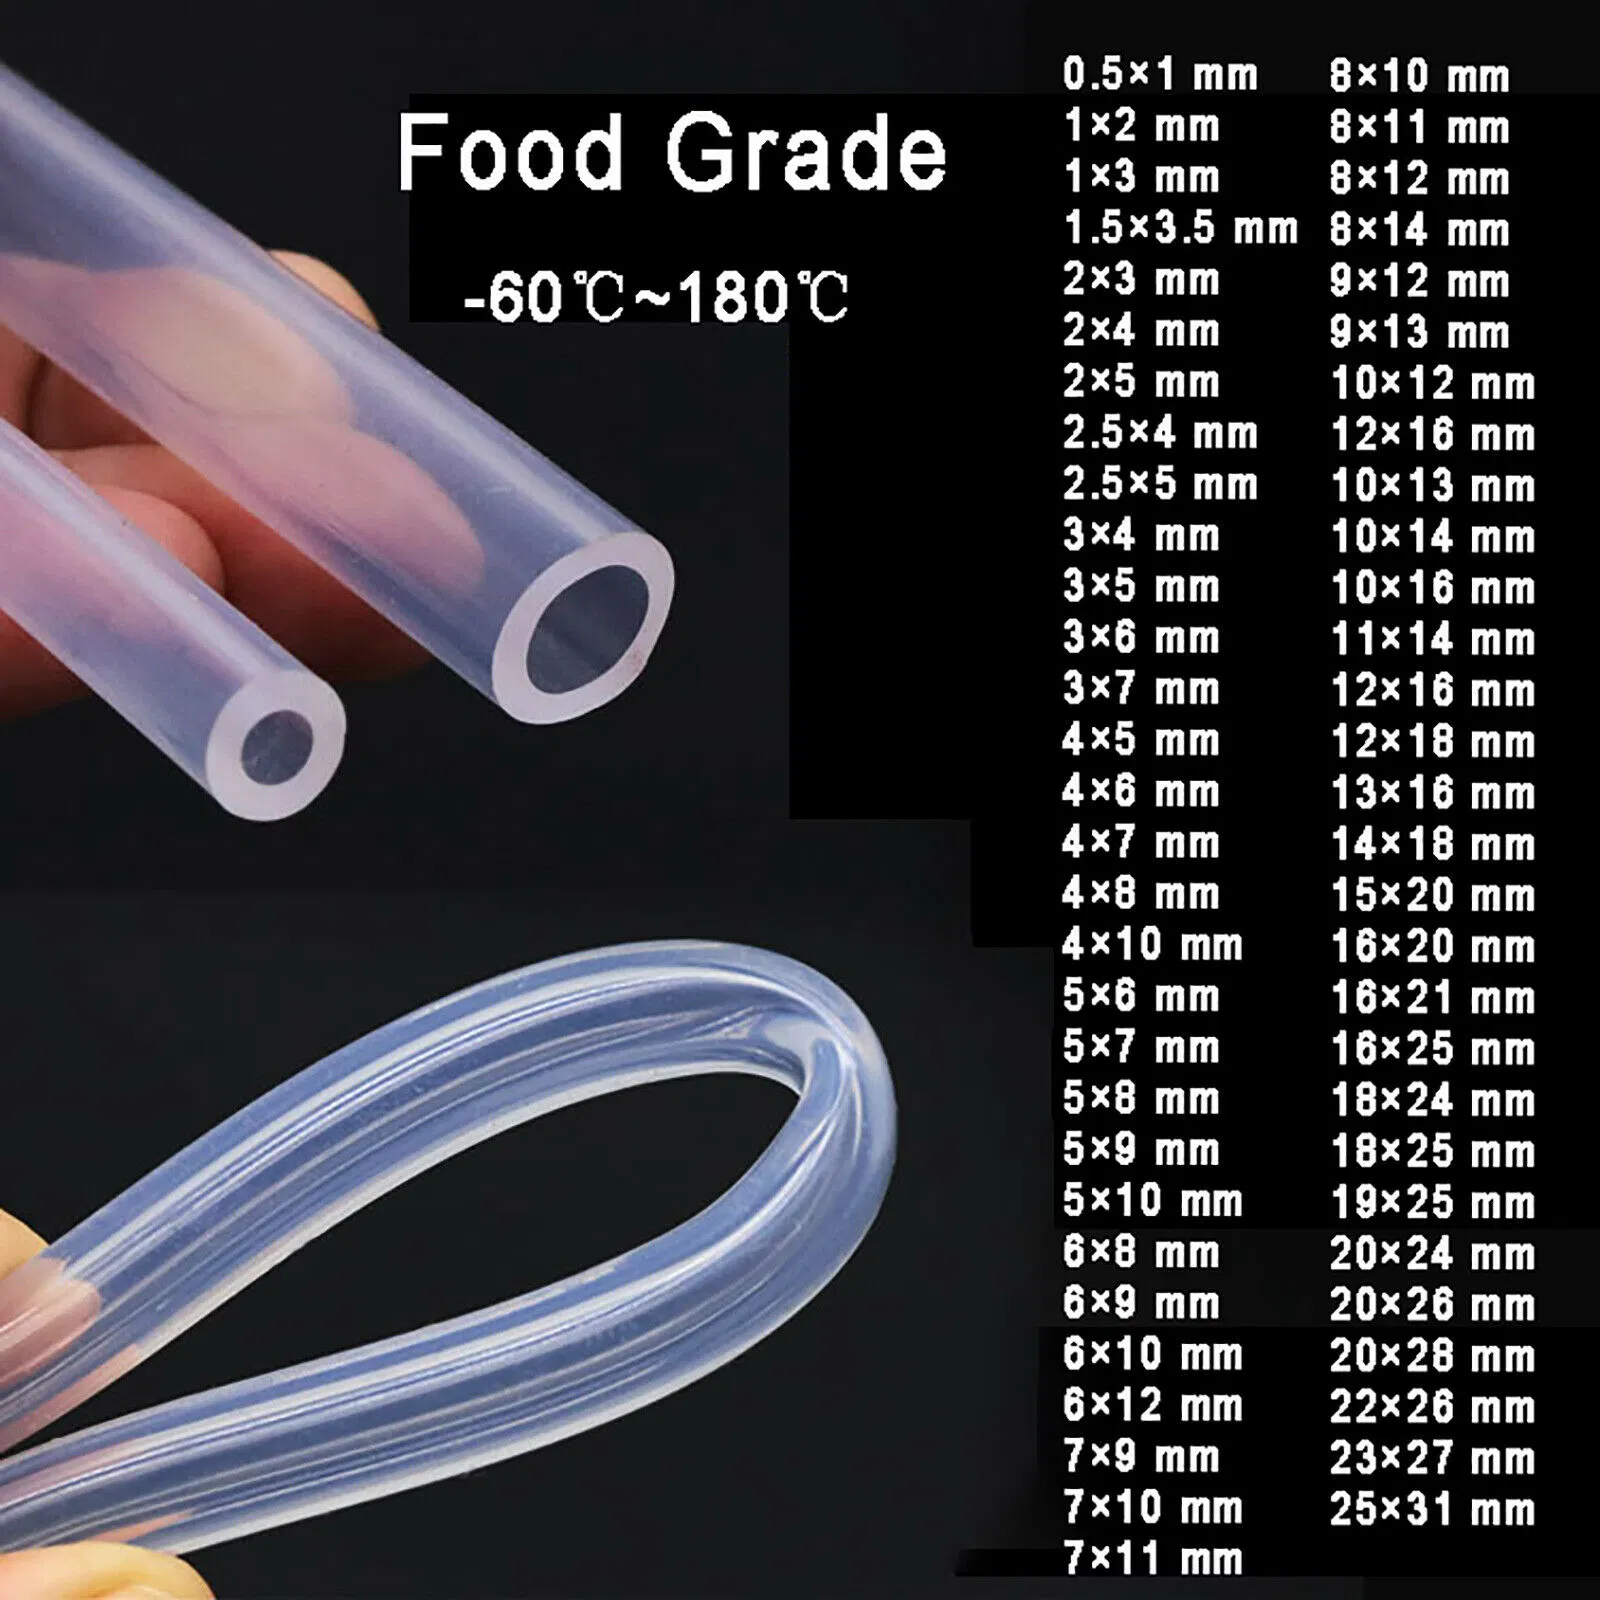 Alta Qualidade flexível de fábrica e resistentes ao calor suave transparente Grau Alimentício Tubo de silicone flexível